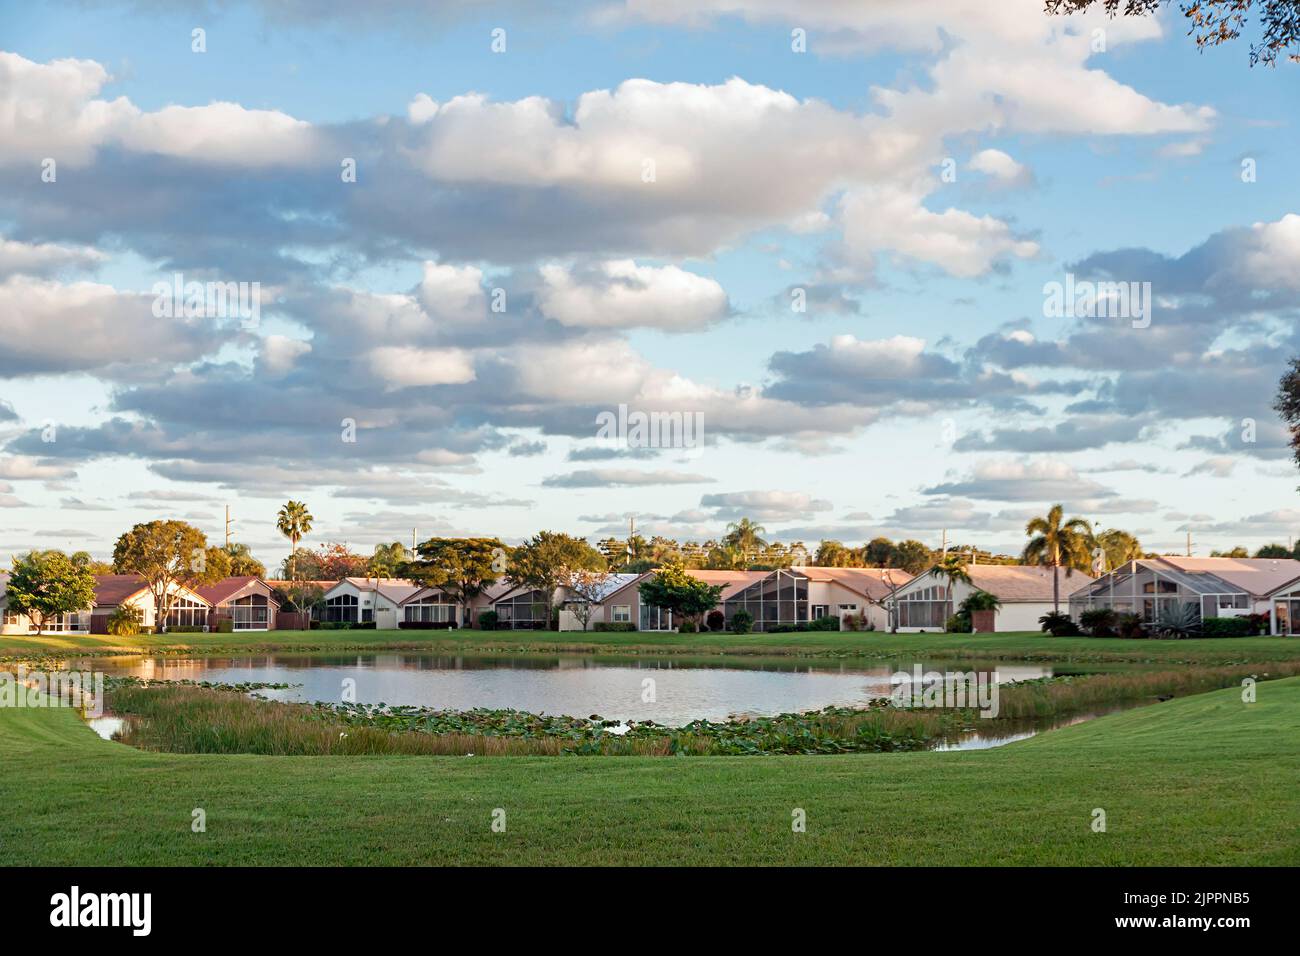 Les maisons de la communauté Lakeridge Greens se trouvent dans le Westchester Country Club de Boynton Beach, dans le comté de Palm Beach, en Floride. Banque D'Images